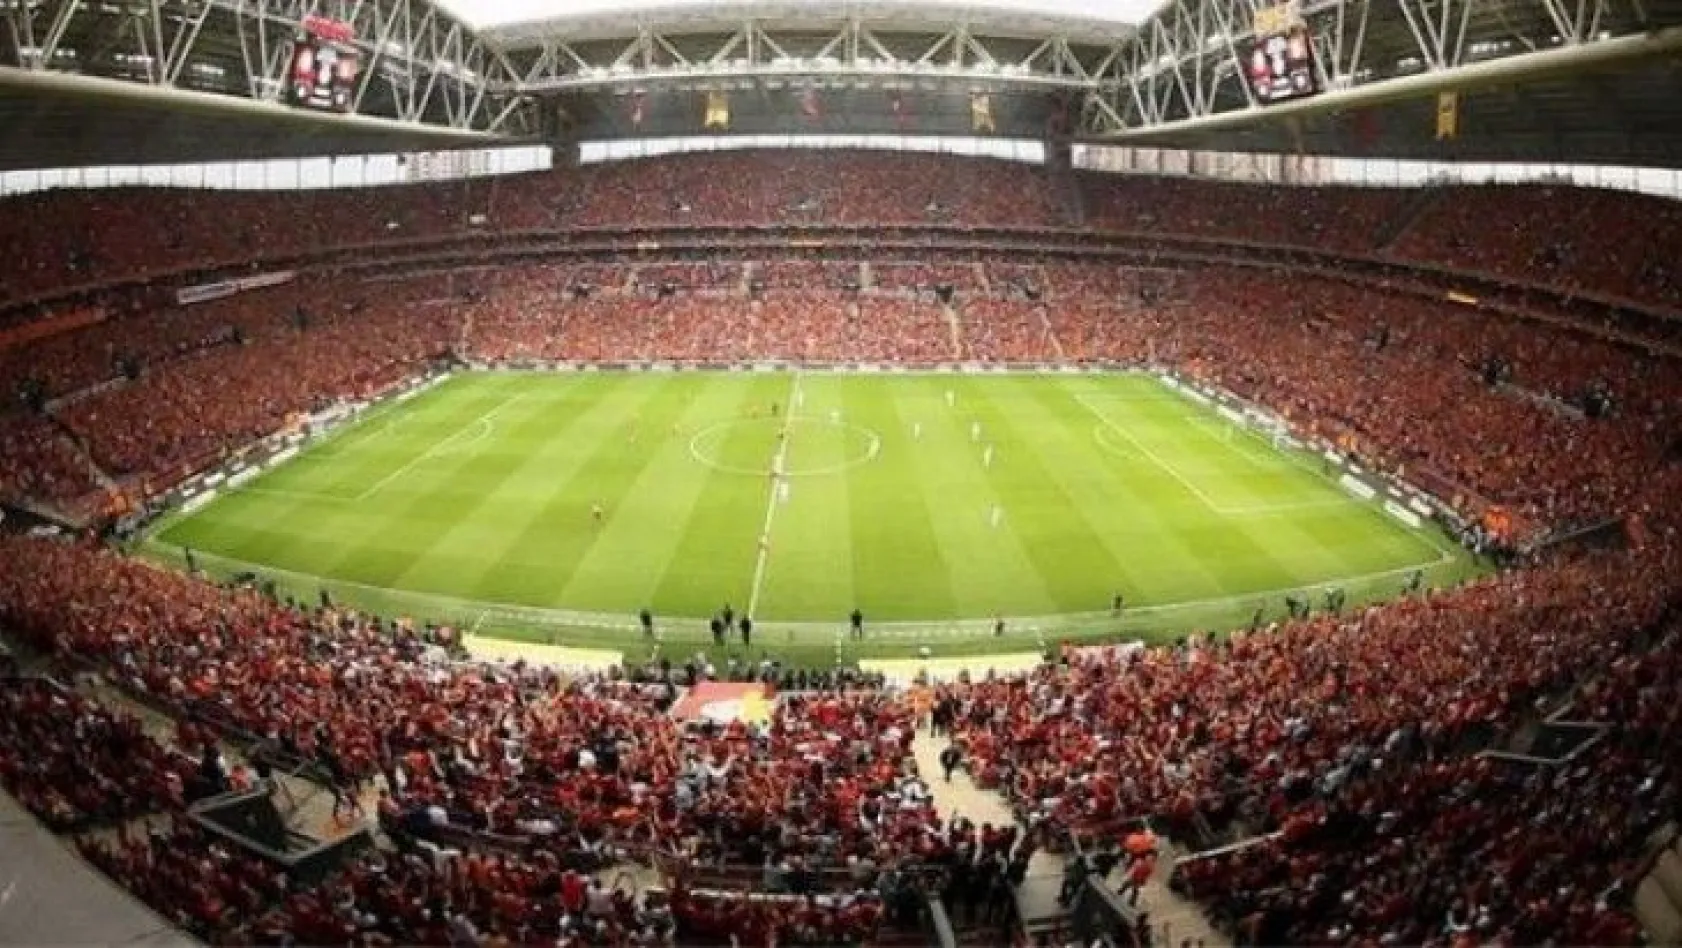 Bakanı Kasapoğlu seyircili maçlar için tarih verdi